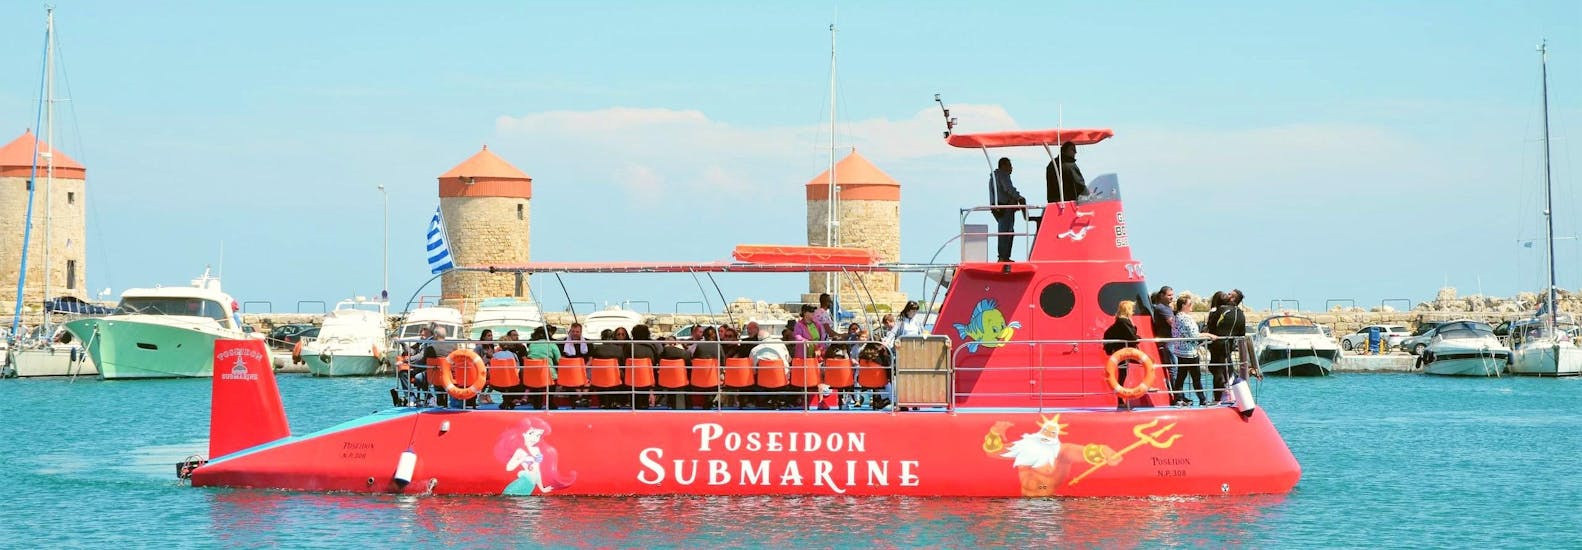 Il semisommergibile della Poseidon Submarine Rhodes sta lasciando il porto di Mandraki.